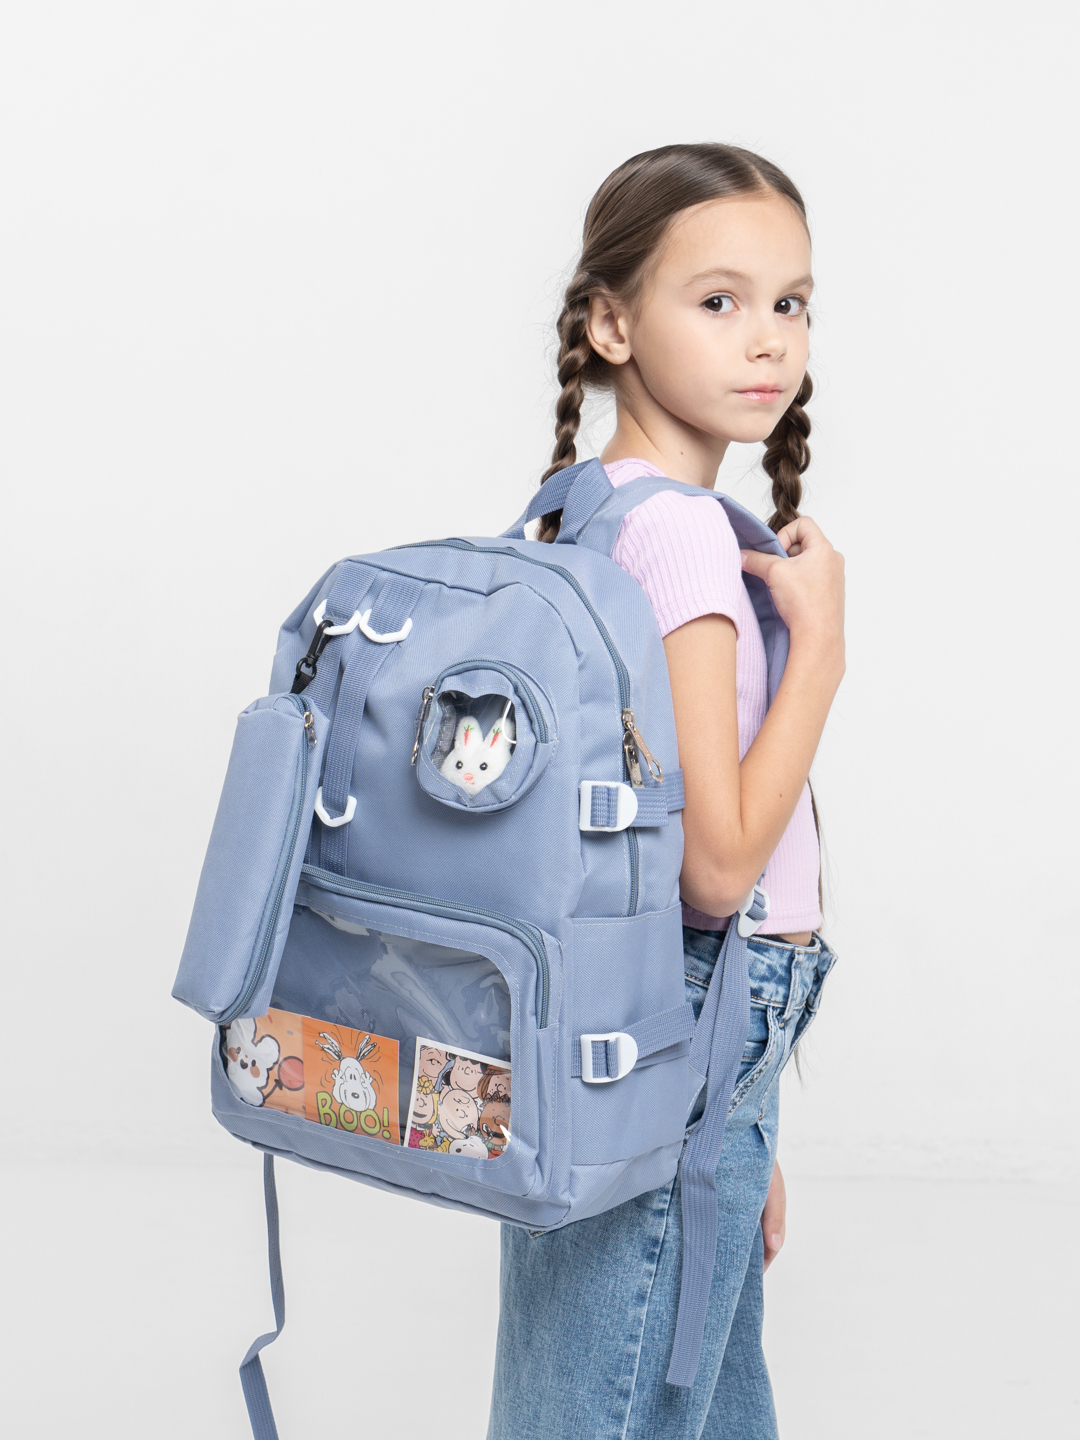 Neobag комплект 5в1 рюкзак пенал косметичка сумка шоппер мешочек для аксессуаров набор для школы